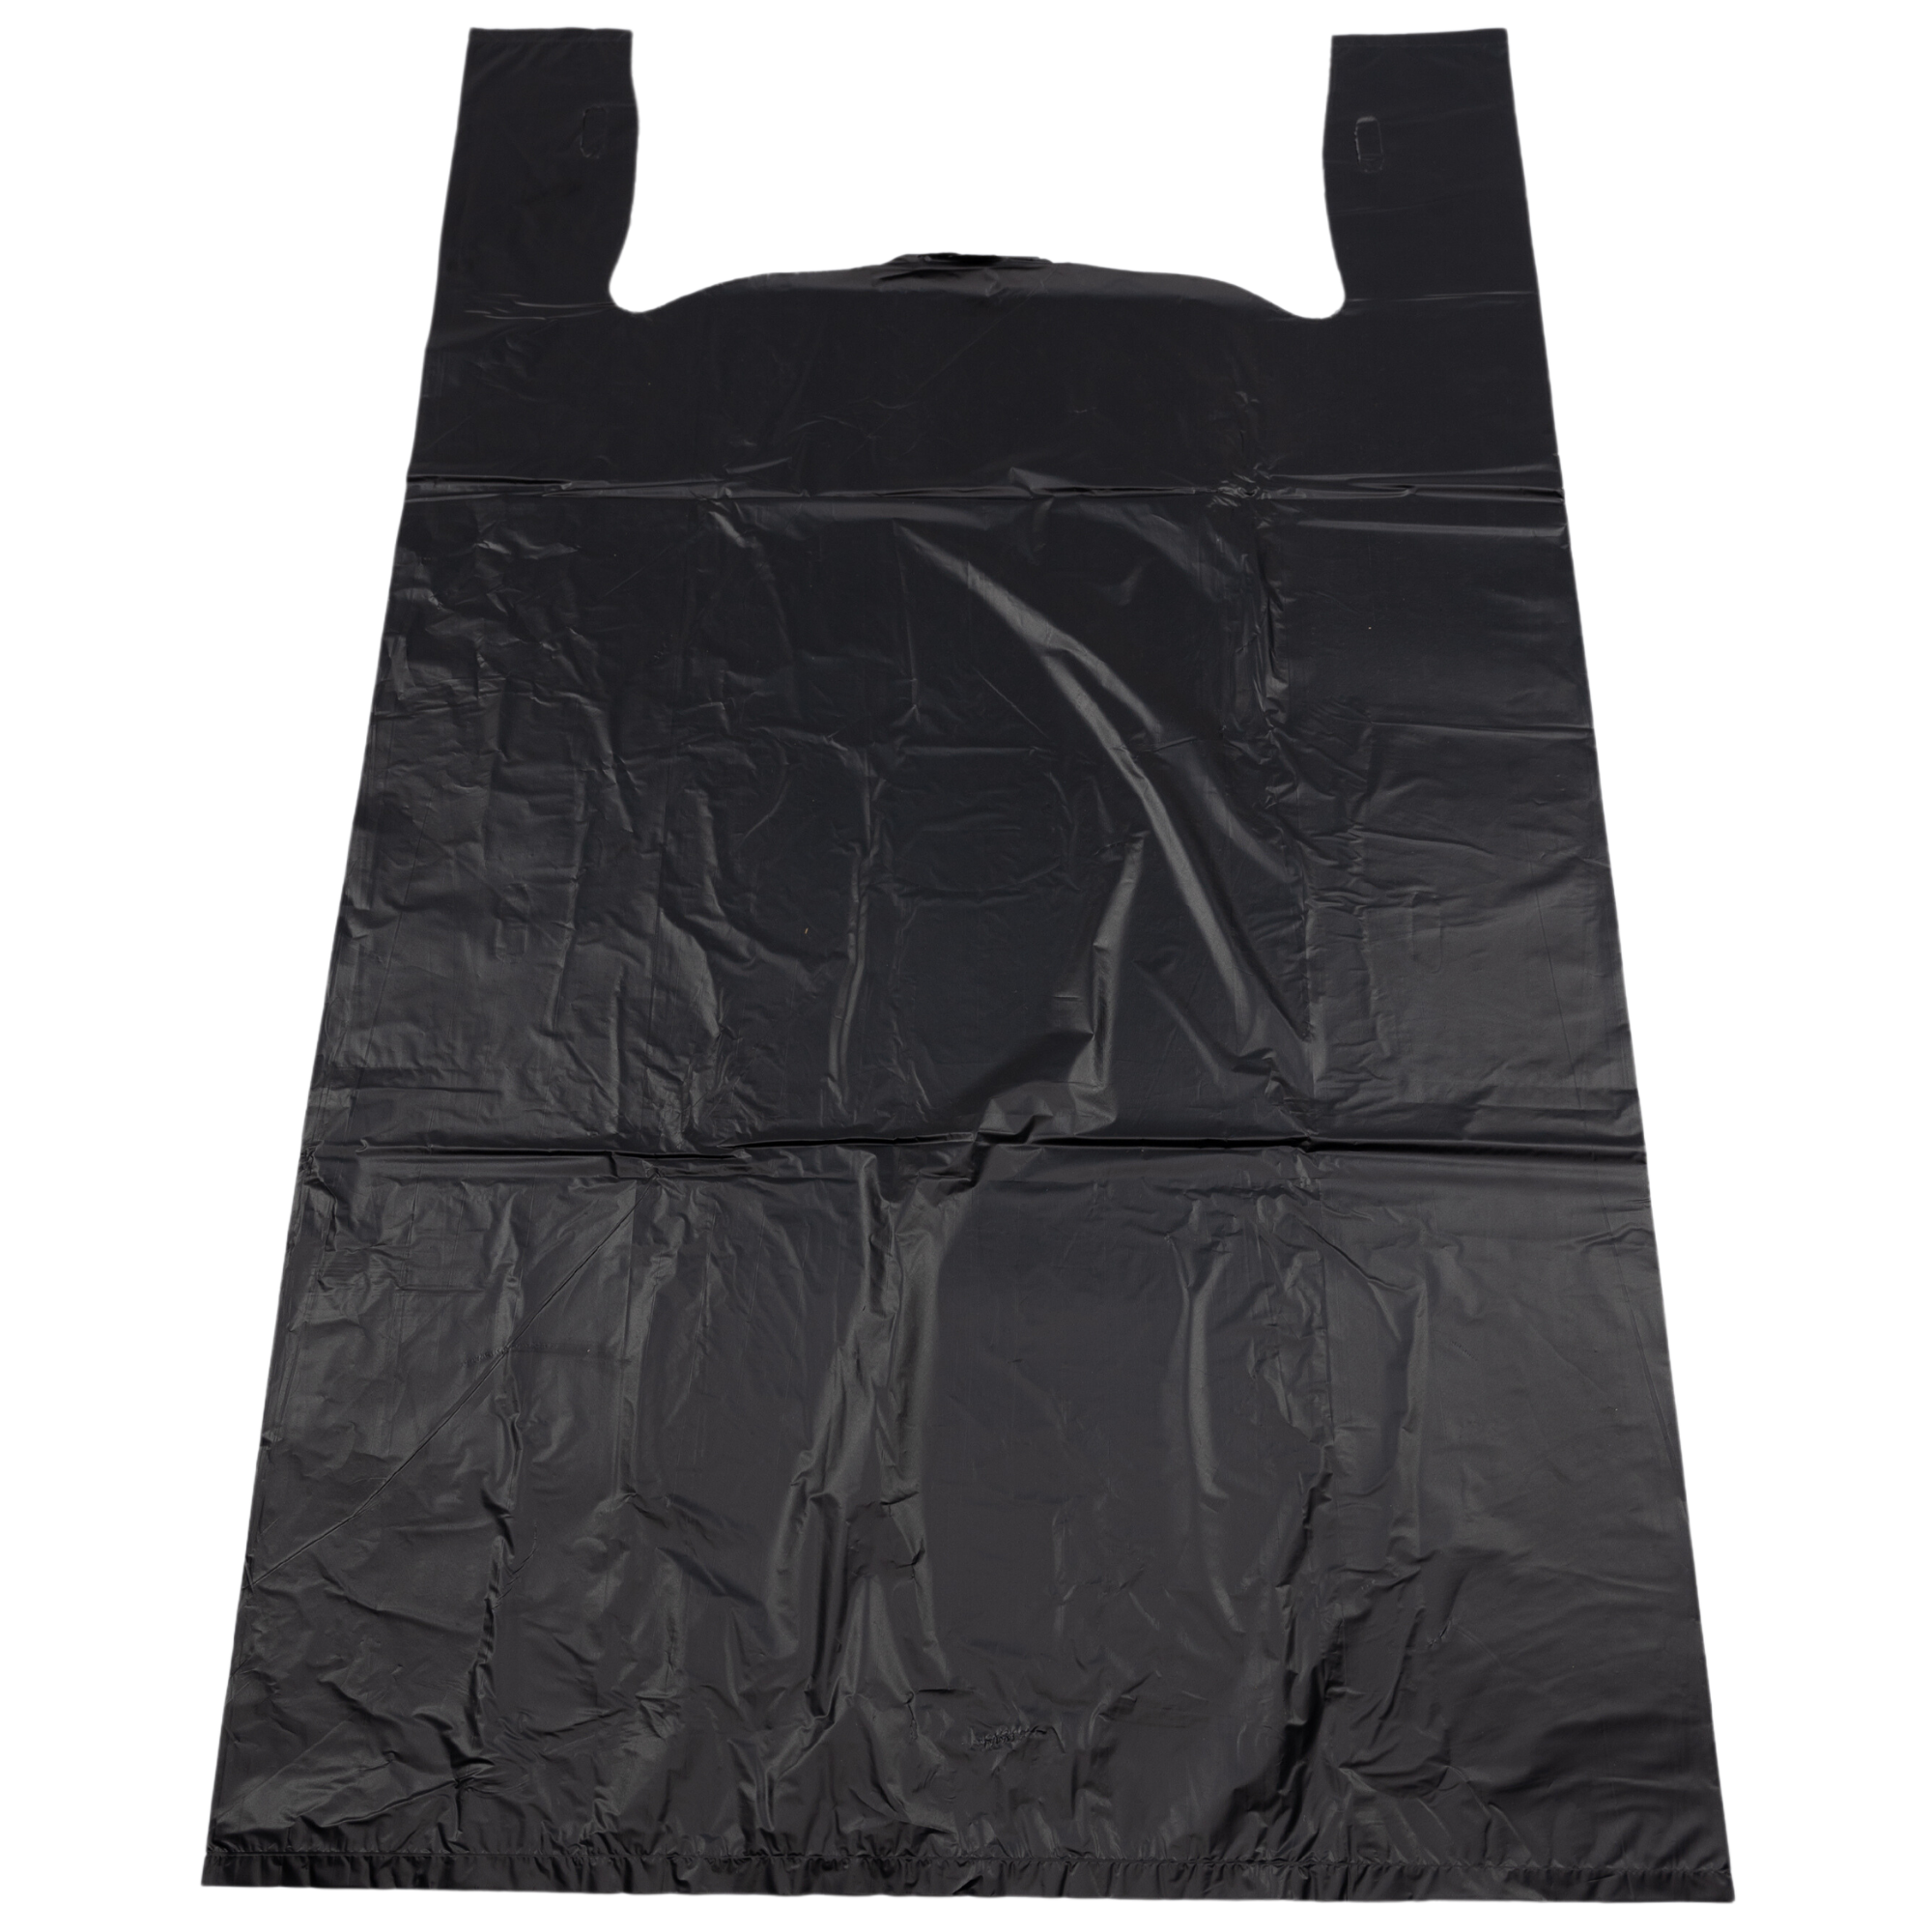 TS Designs' T-Shirt Blanks Grab Bag (10-Mixed Size)